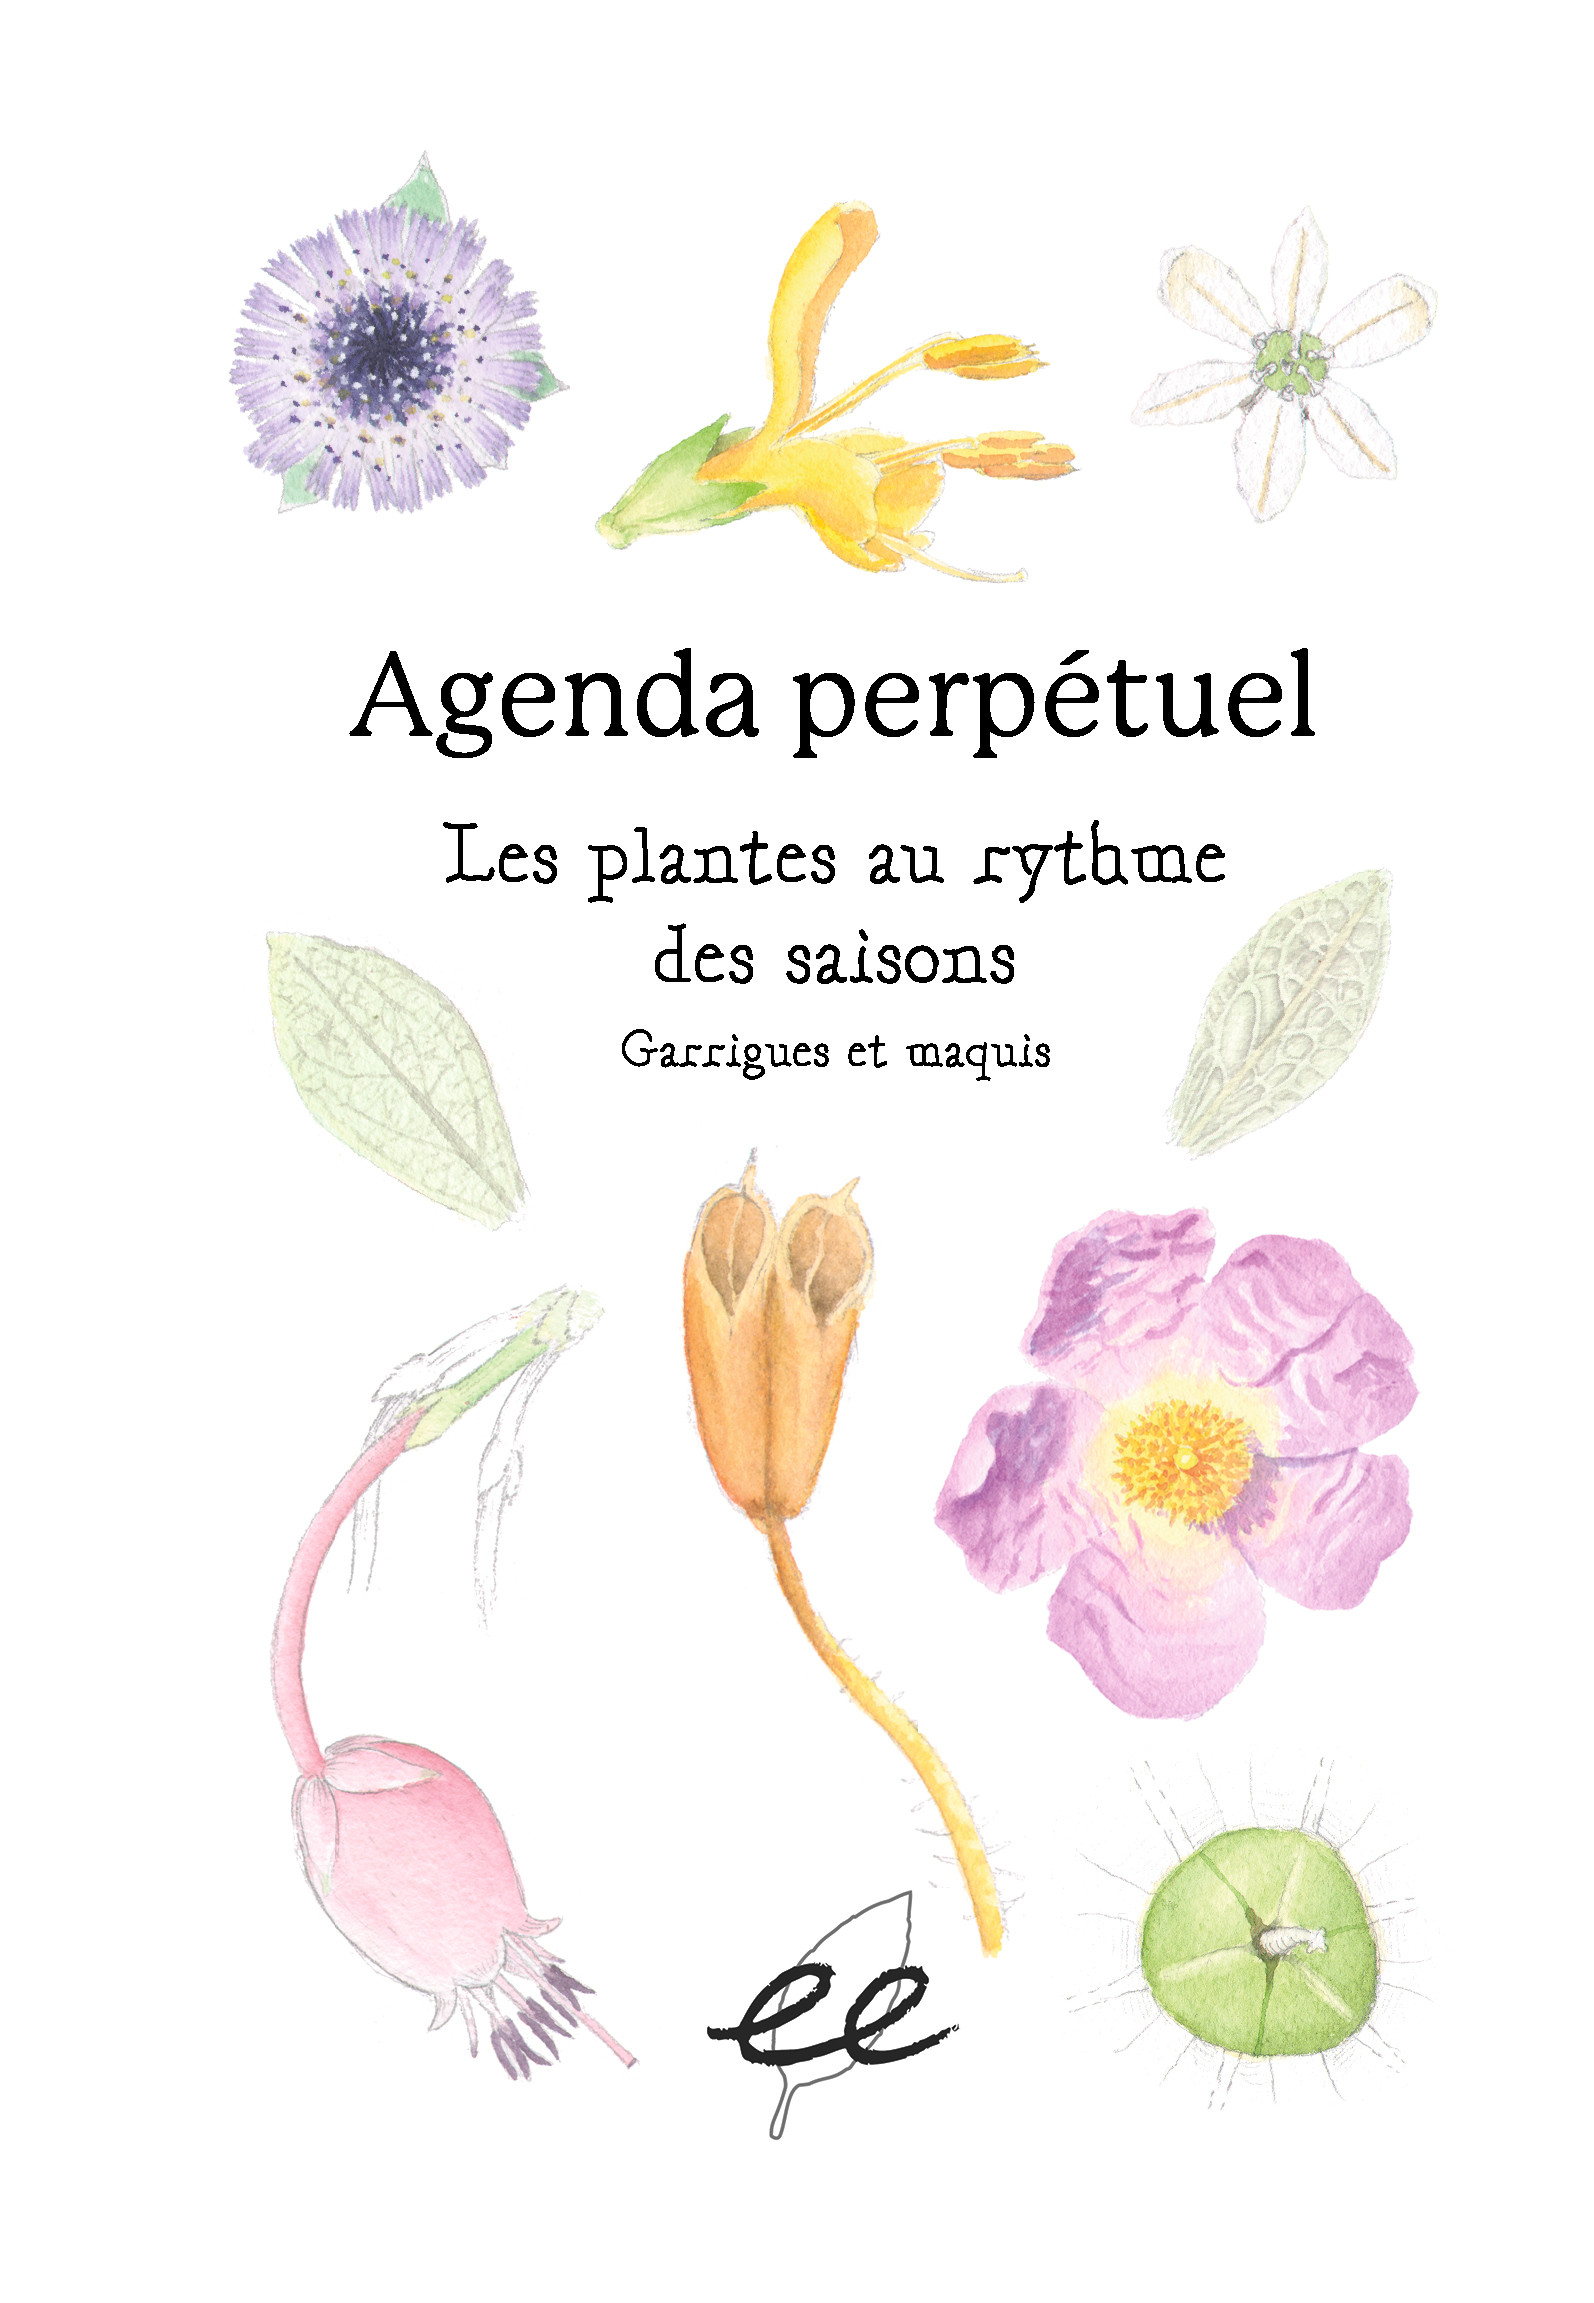 Les plantes au rytyhme des saisons - Agenda perpétuel naturaliste